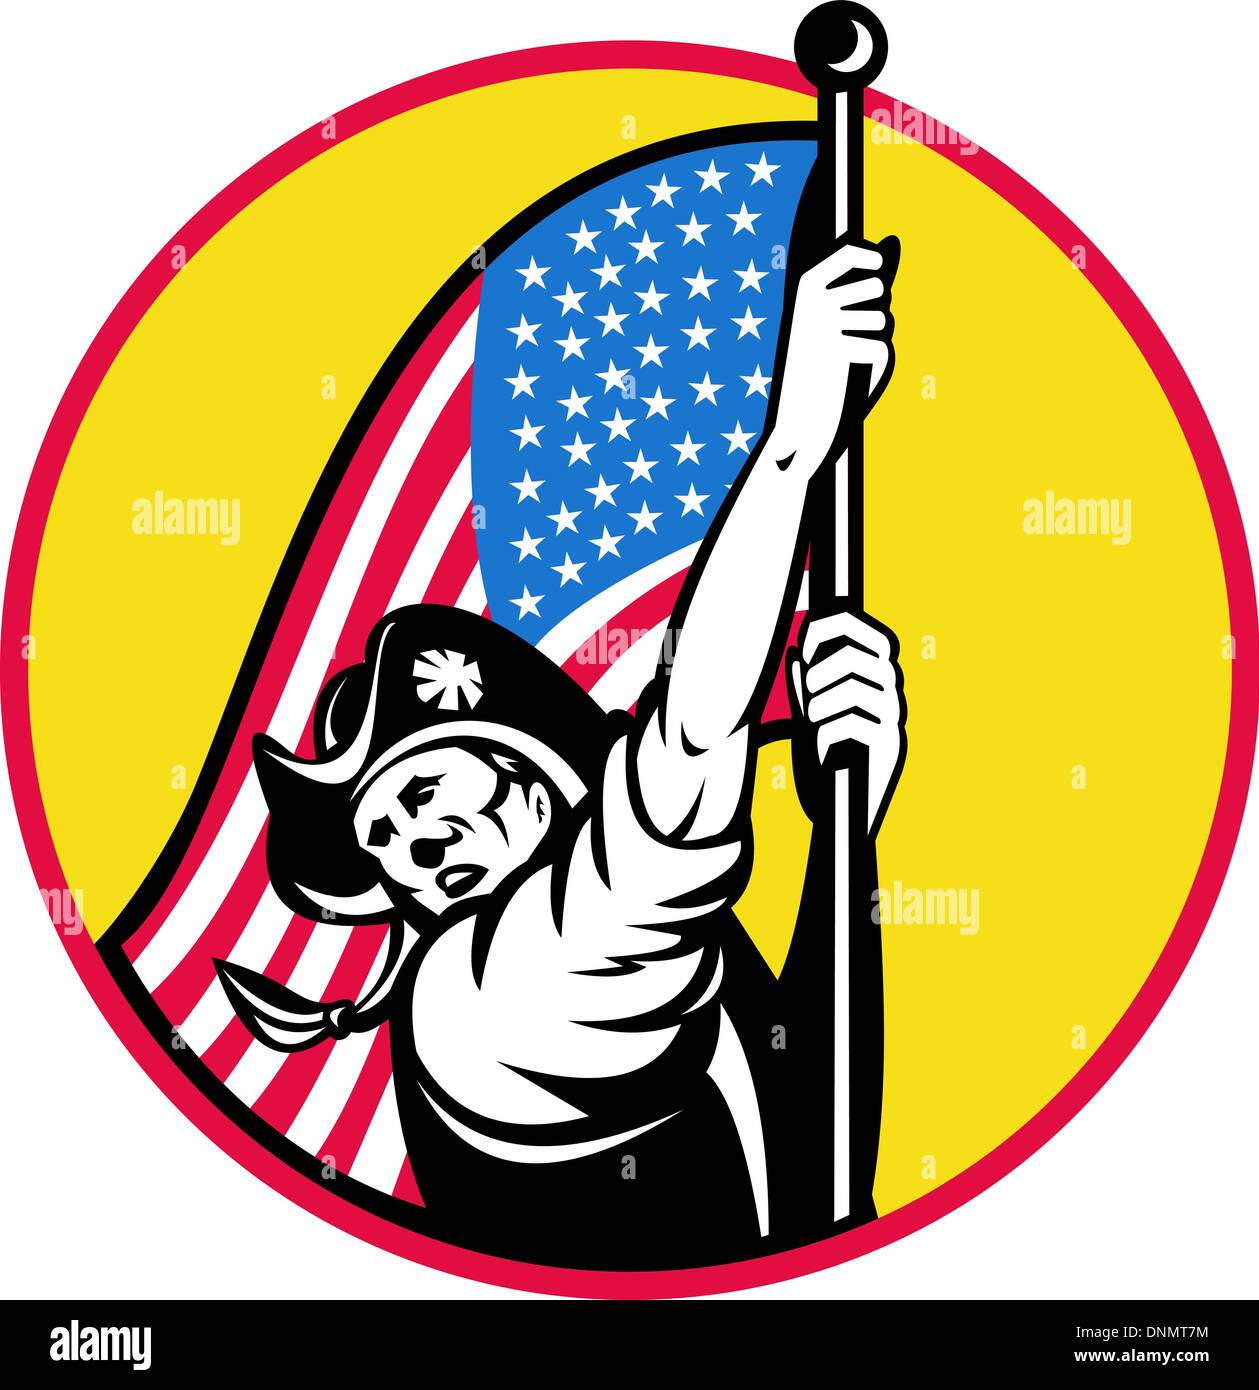 Illustrazione di un American soldato rivoluzionario con stelle e strisce di bandiera guardando al lato impostato all'interno del cerchio. fatto in stile retrò Illustrazione Vettoriale